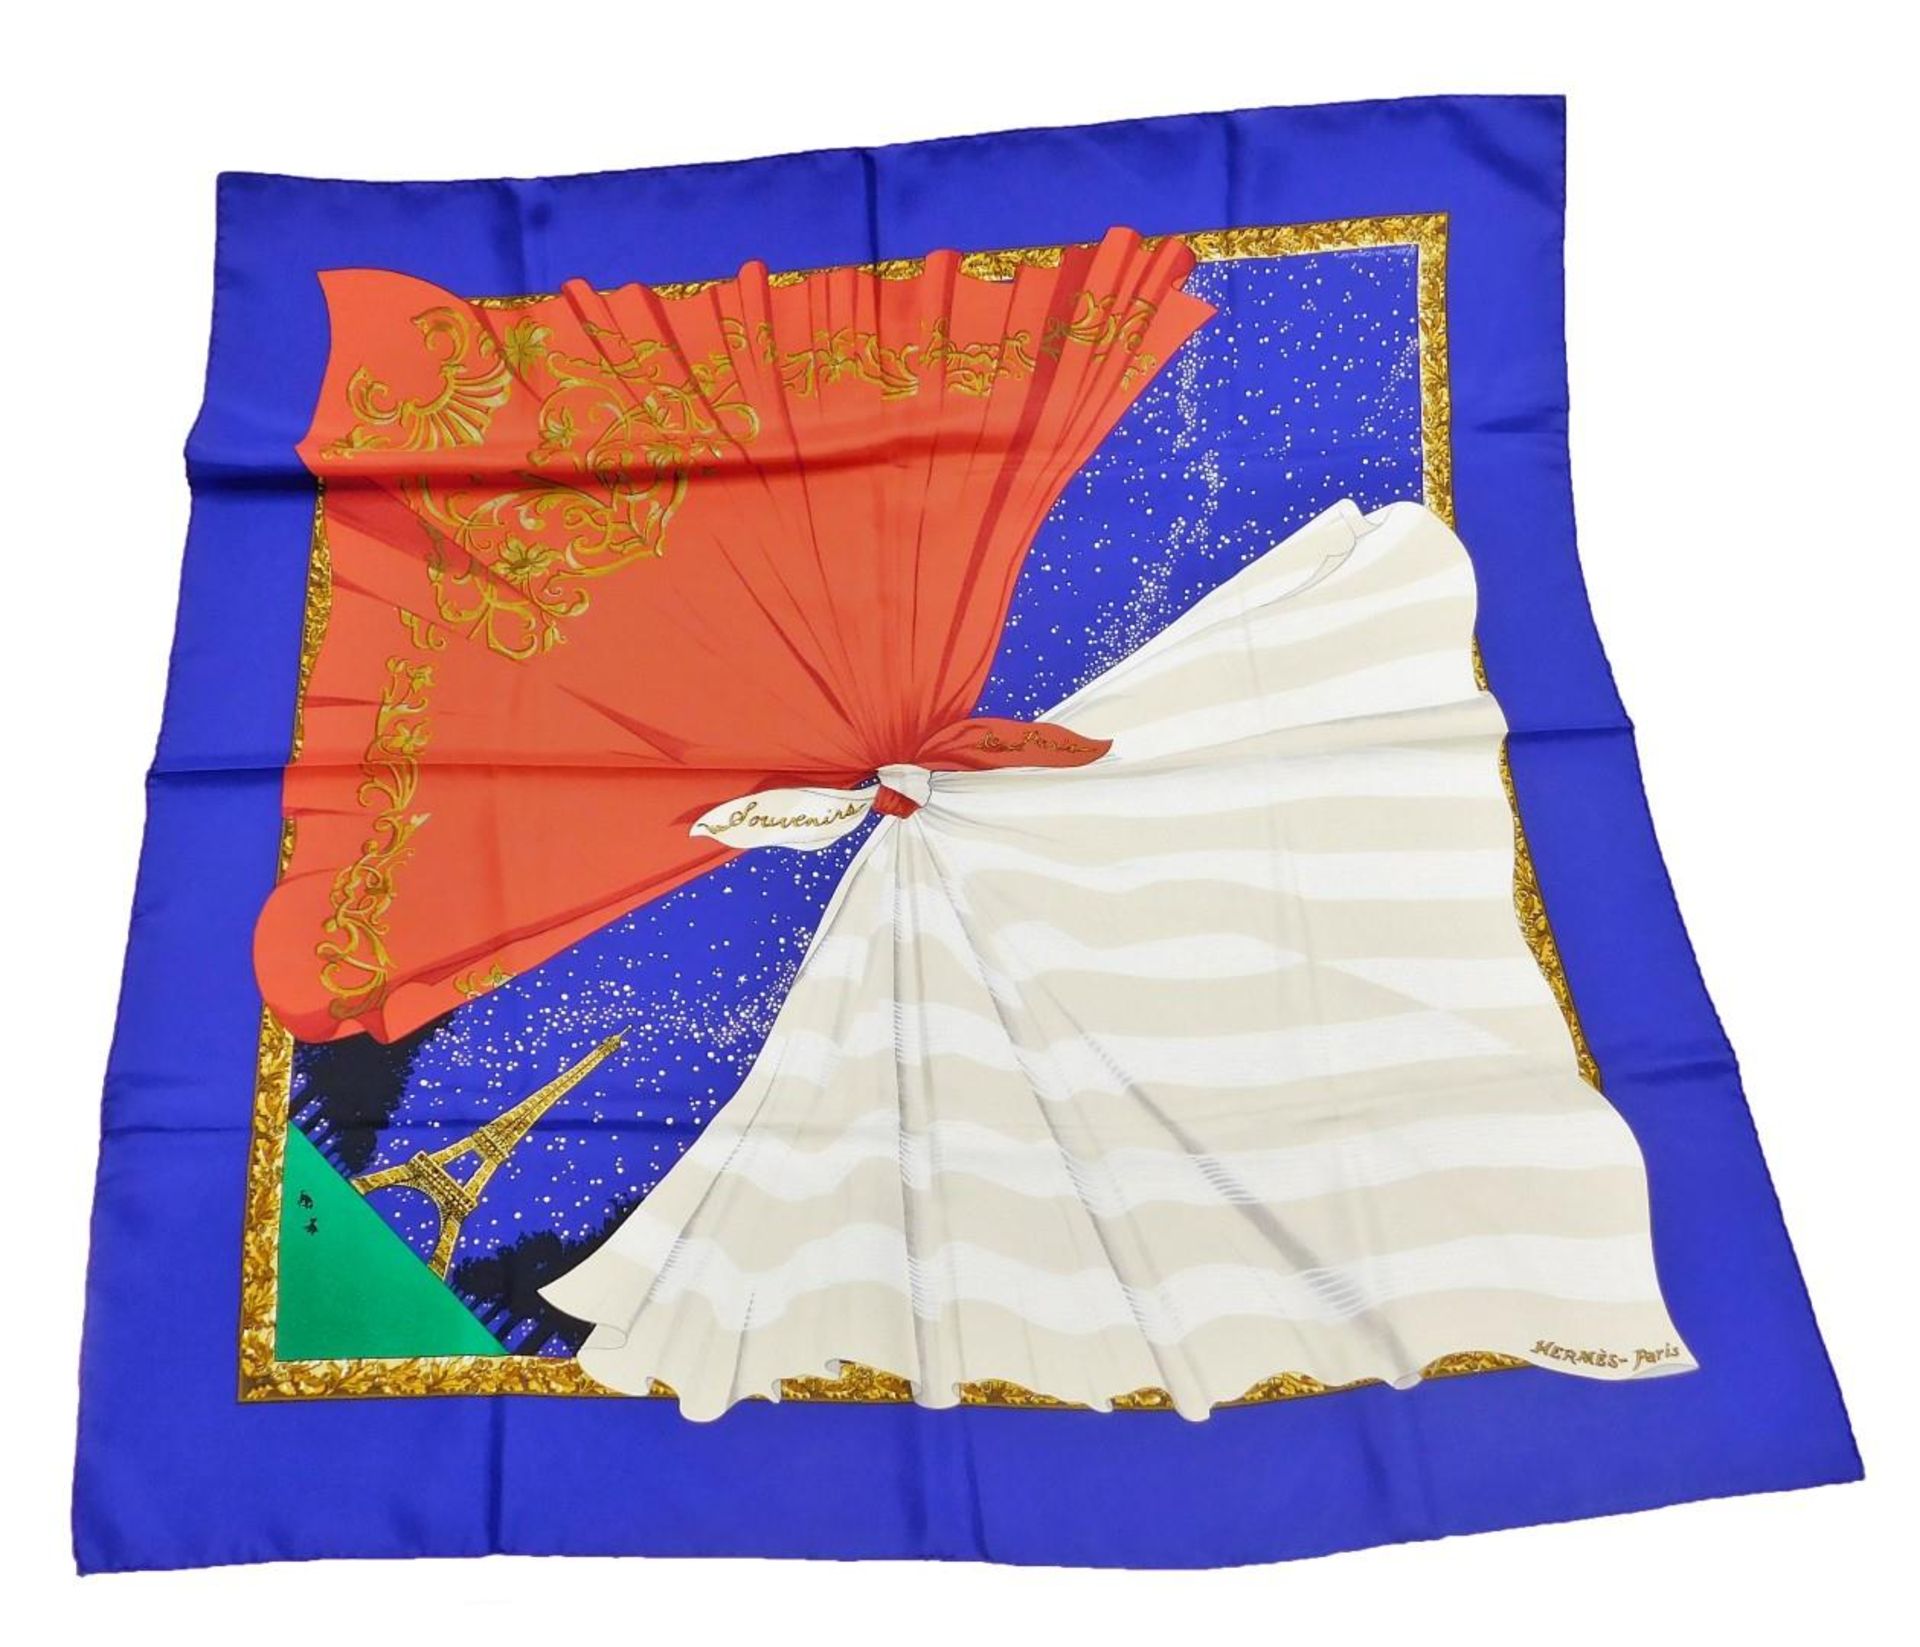 A Hermes Souvenirs de Paris silk scarf, designed by Hilton McConnico, 86cm x 86cm.